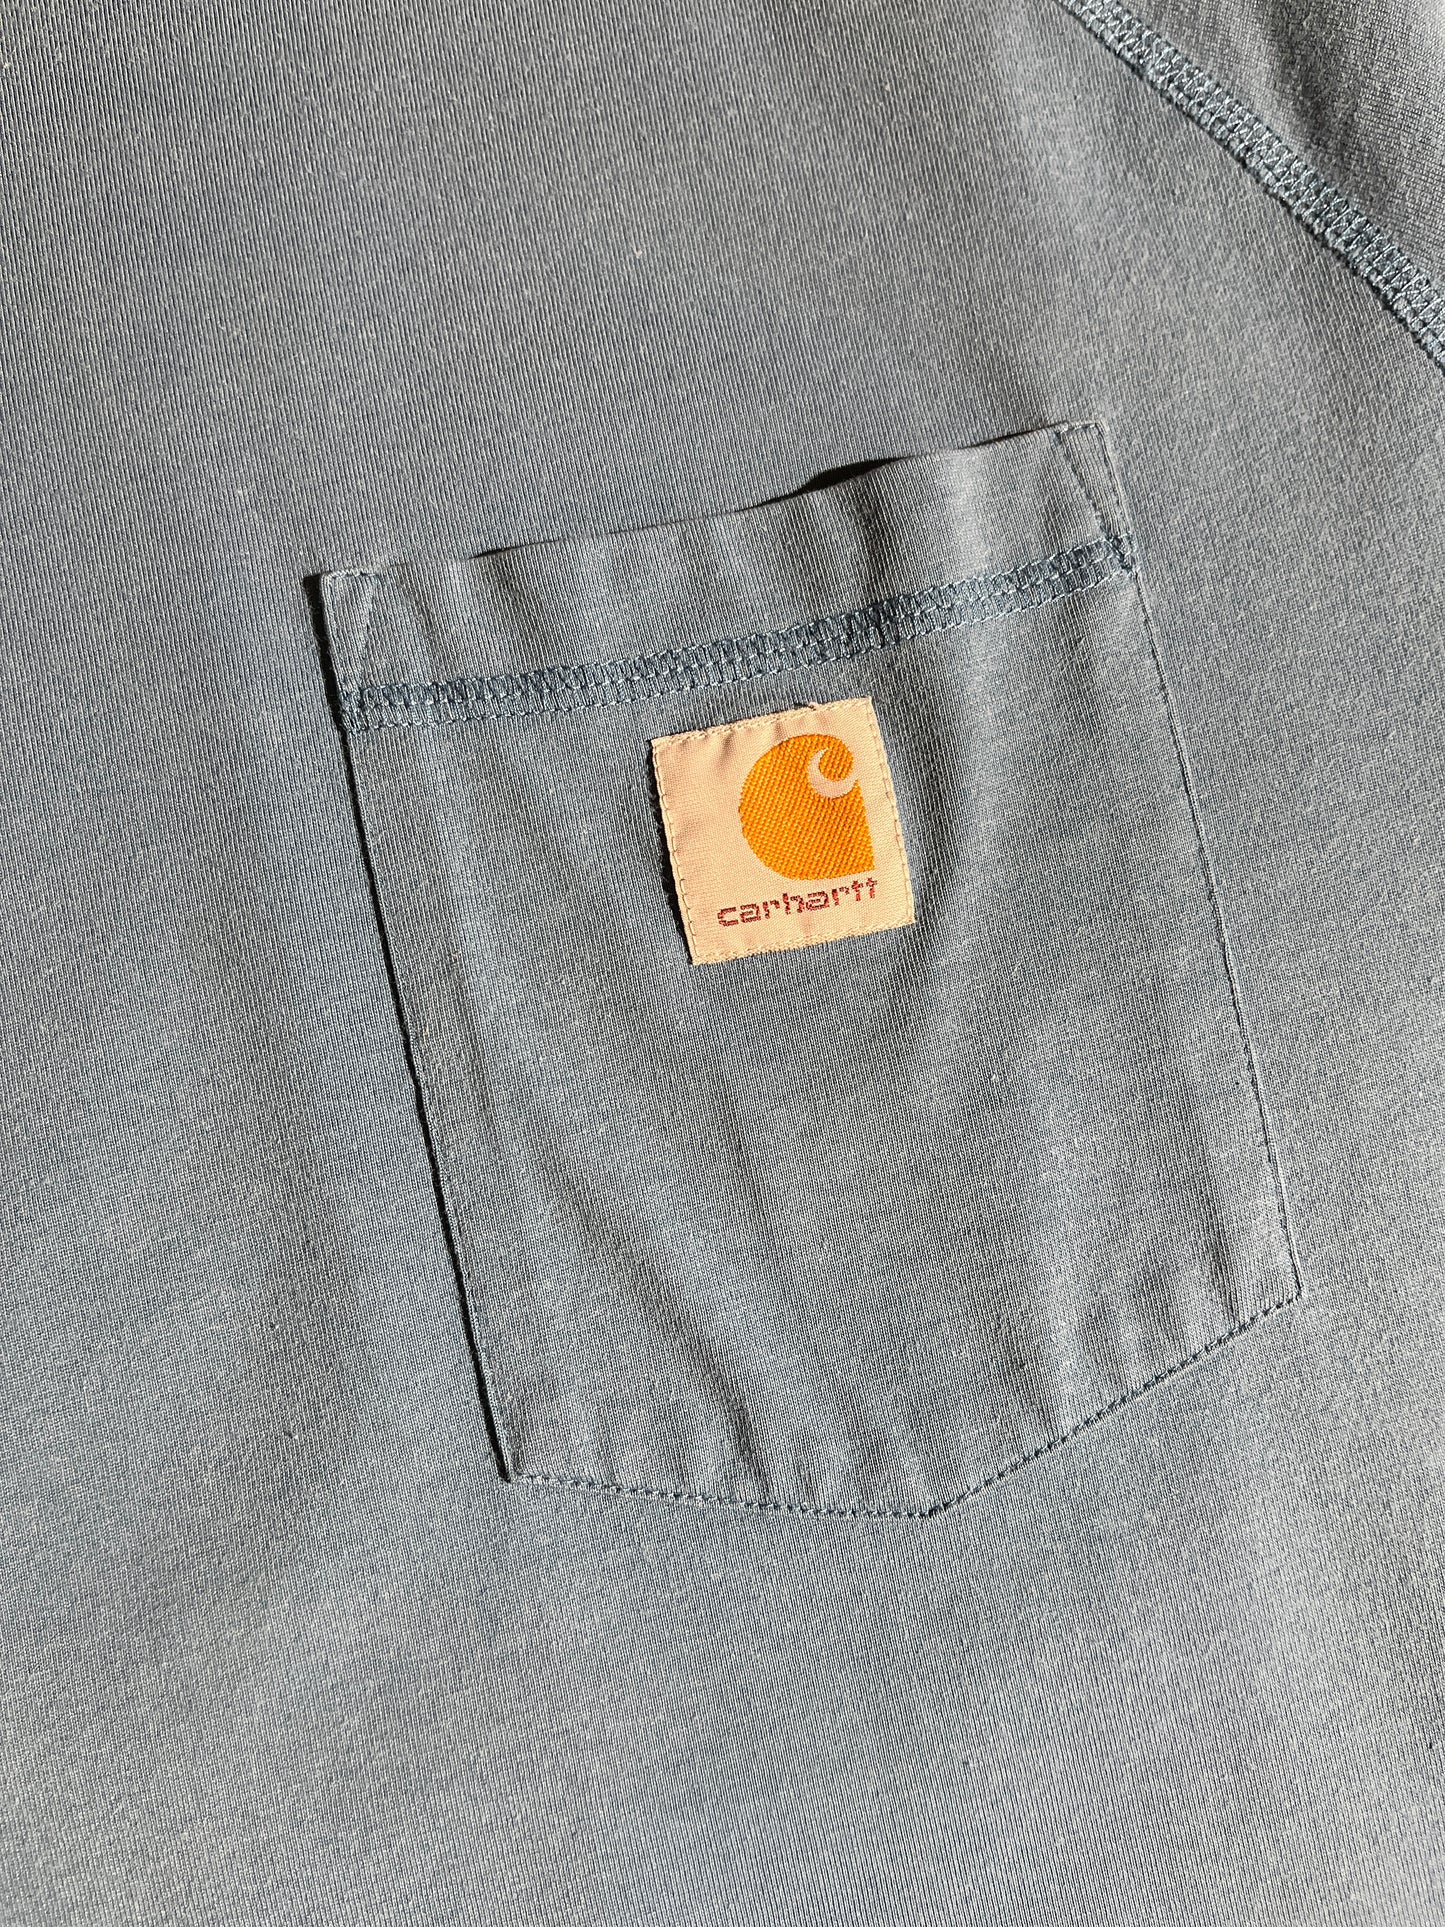 Vintage Carhartt T-Shirt Breast Pocket